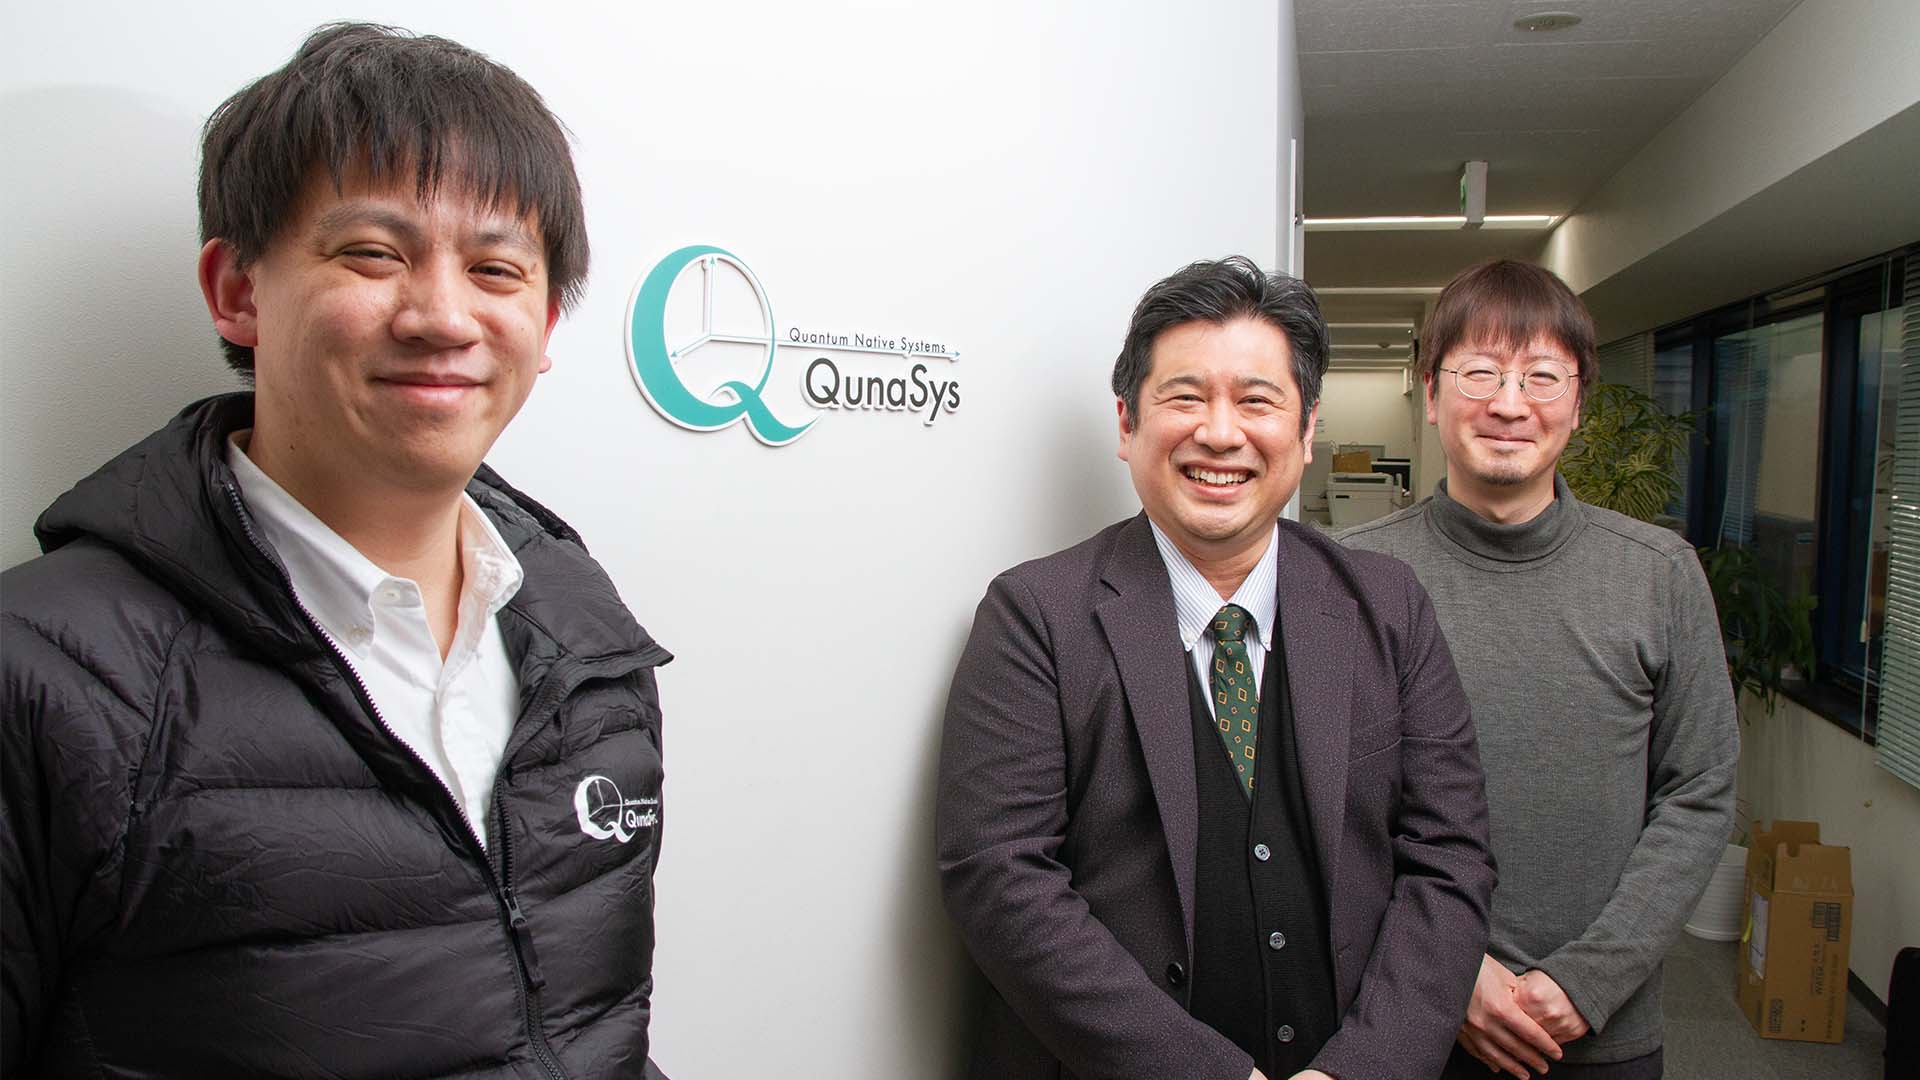 量子技術集団「QunaSys」が取り組んだ、ビジネスで勝つための知財戦略のカバー画像